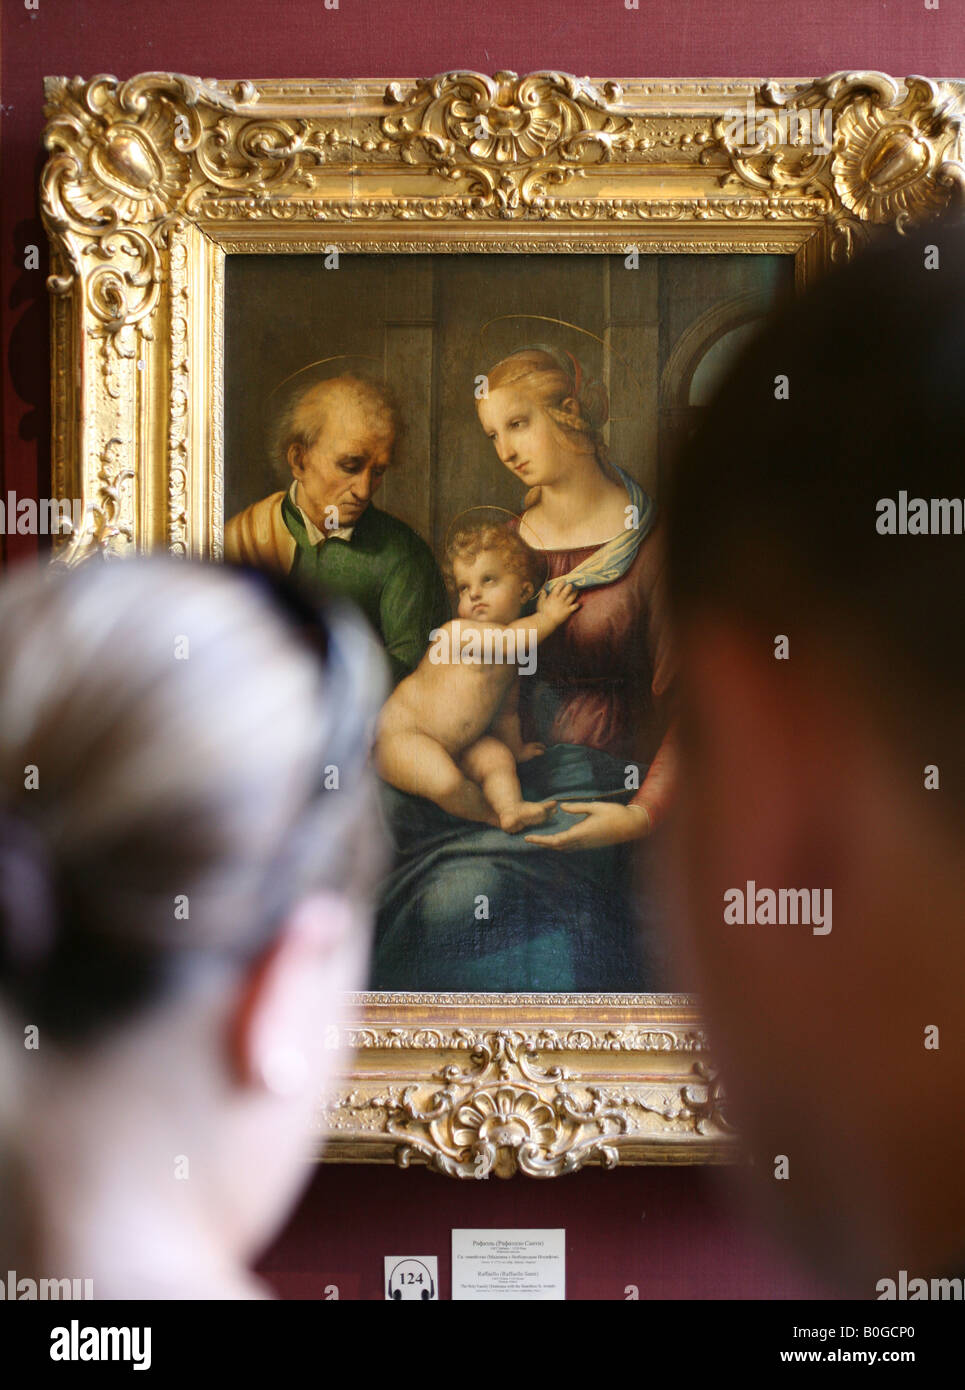 Visiteurs en face de la célèbre peinture de Raphaël "La Sainte Famille" dans le Musée de l'Ermitage à Saint-Pétersbourg, Russie Banque D'Images